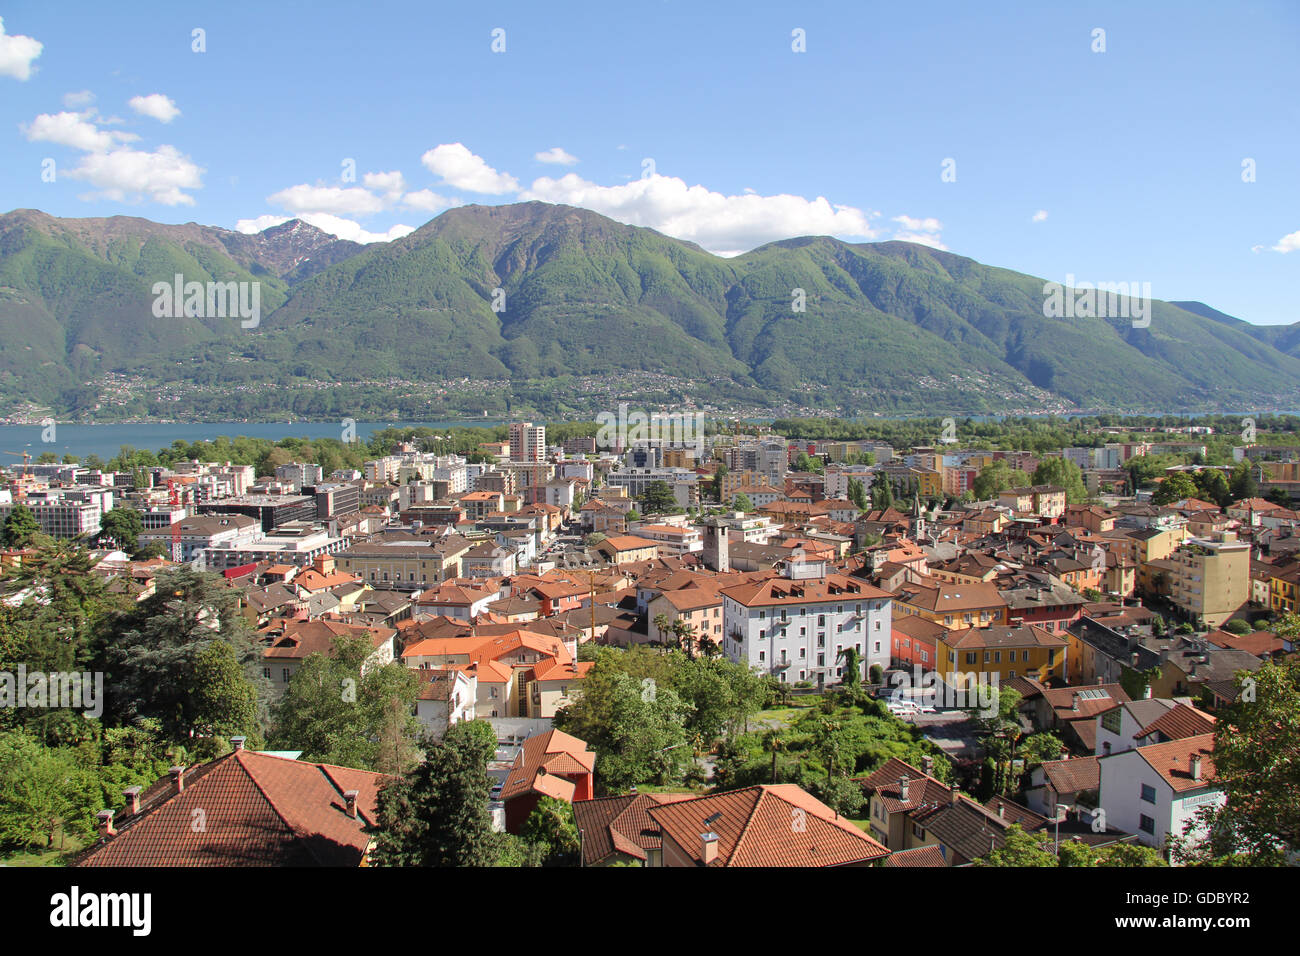 Switzerland,Europe,Ticino,Locarno,Lago Maggiore,lake,Old Town Stock Photo